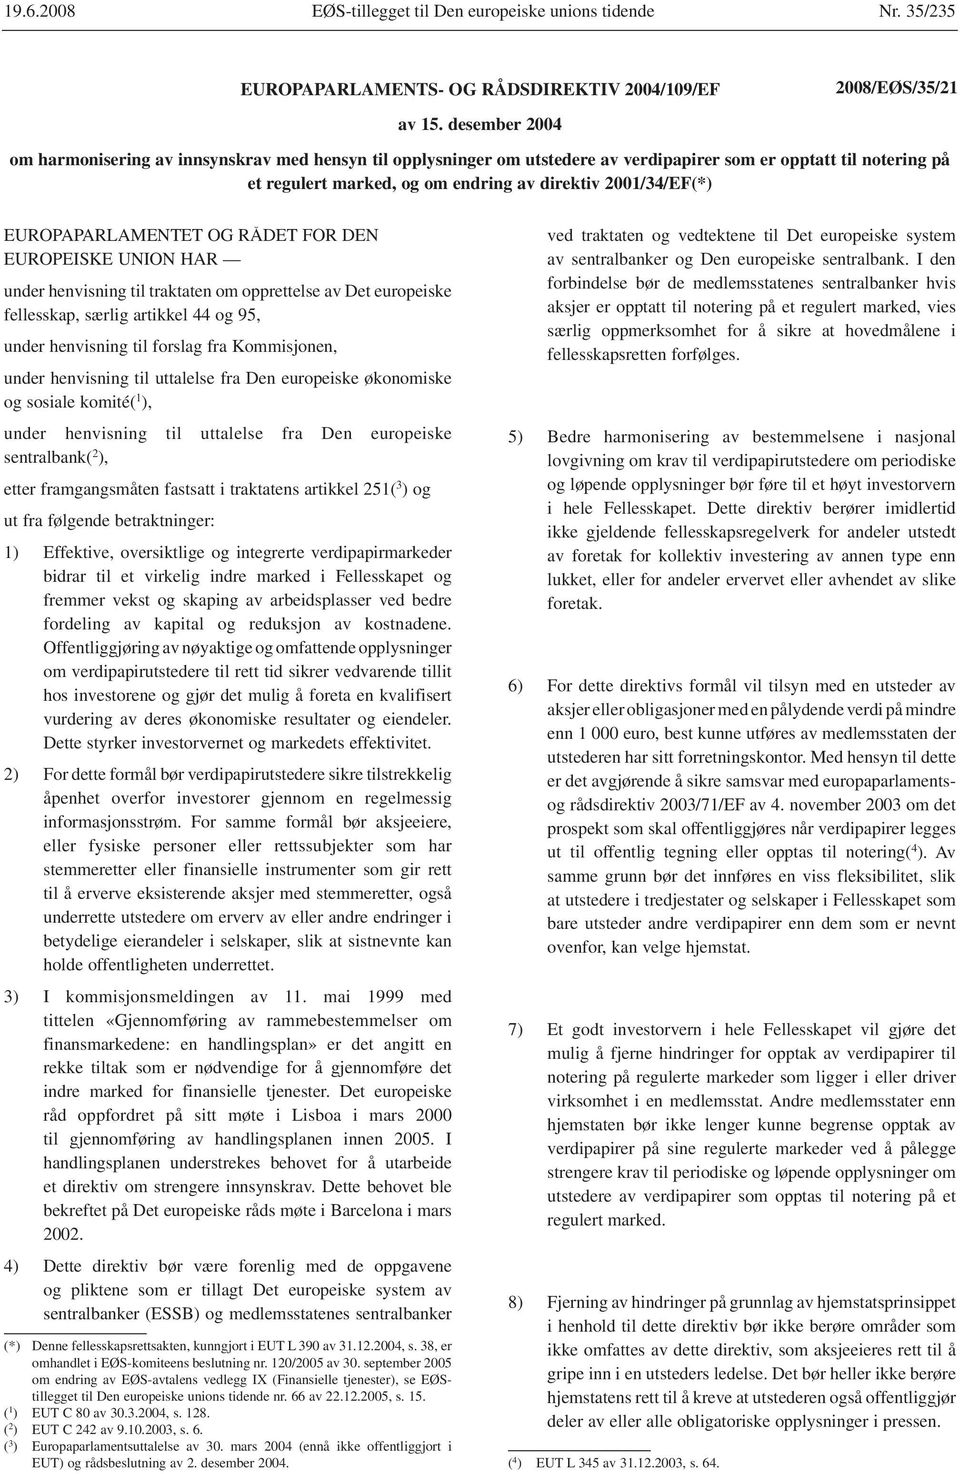 EUROPAPARLAMENTET OG RÅDET FOR DEN EUROPEISKE UNION HAR under henvisning til traktaten om opprettelse av Det europeiske fellesskap, særlig artikkel 44 og 95, under henvisning til forslag fra